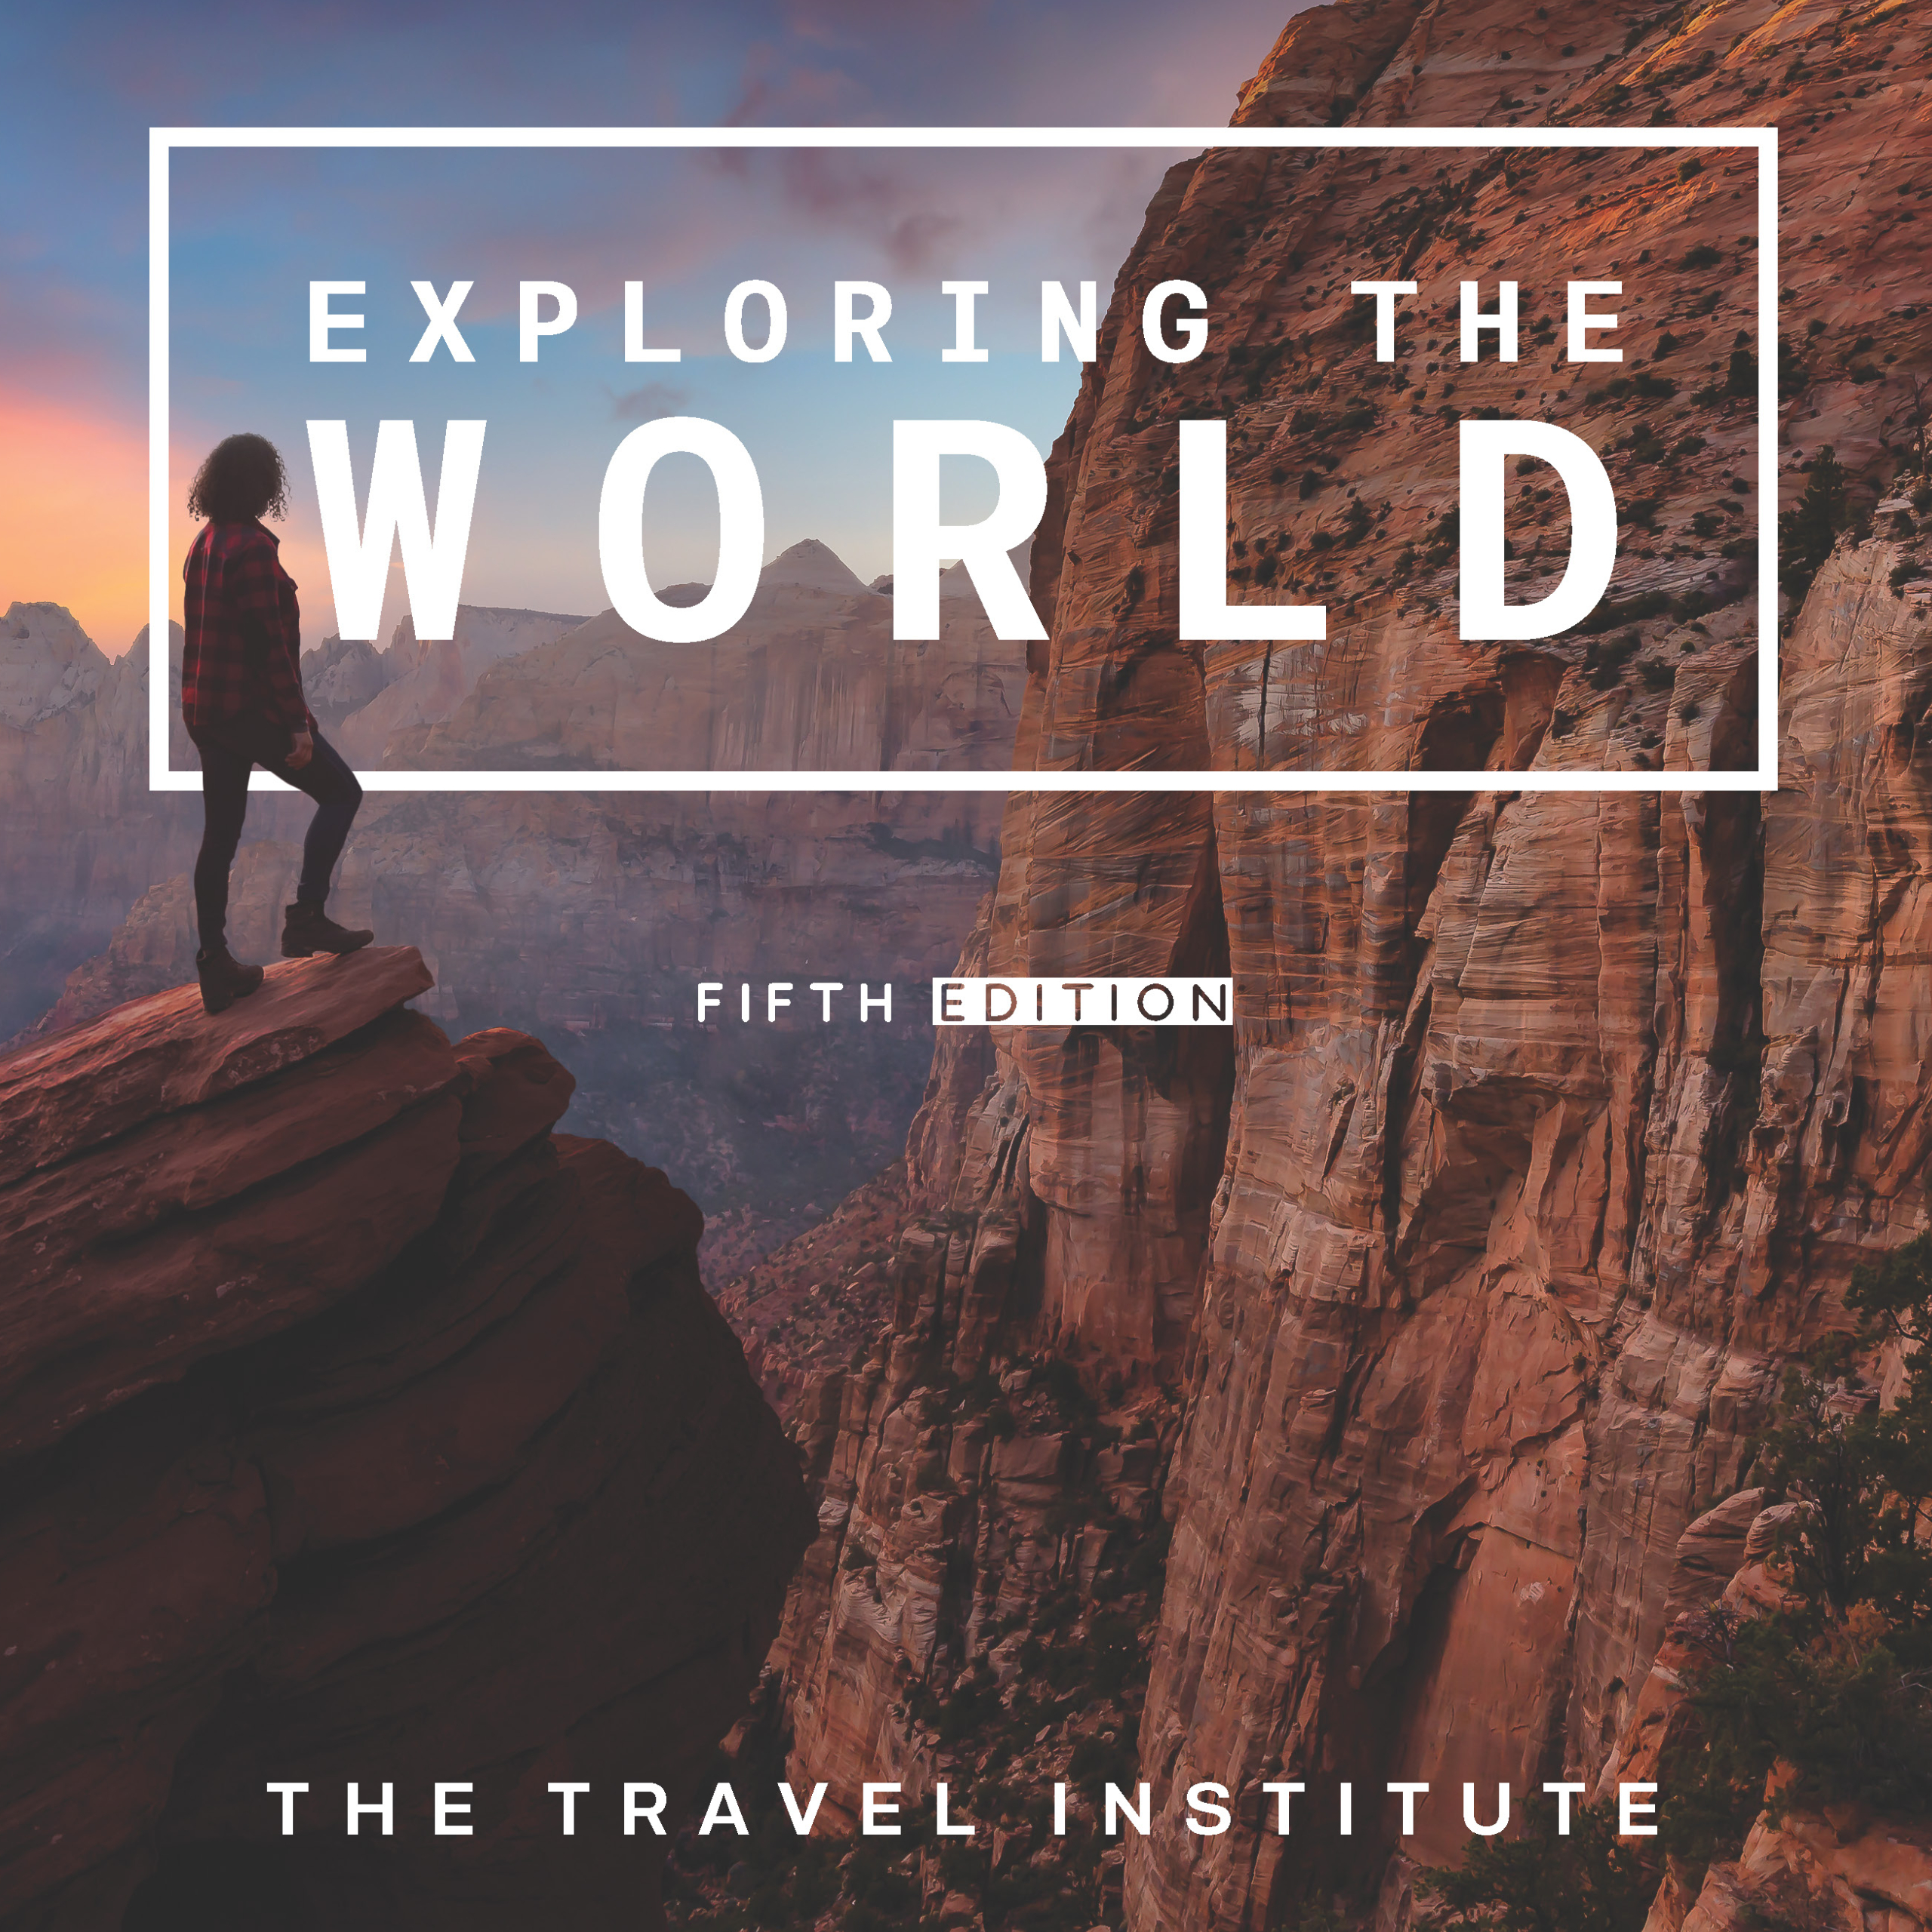 Global travel institute curriculum